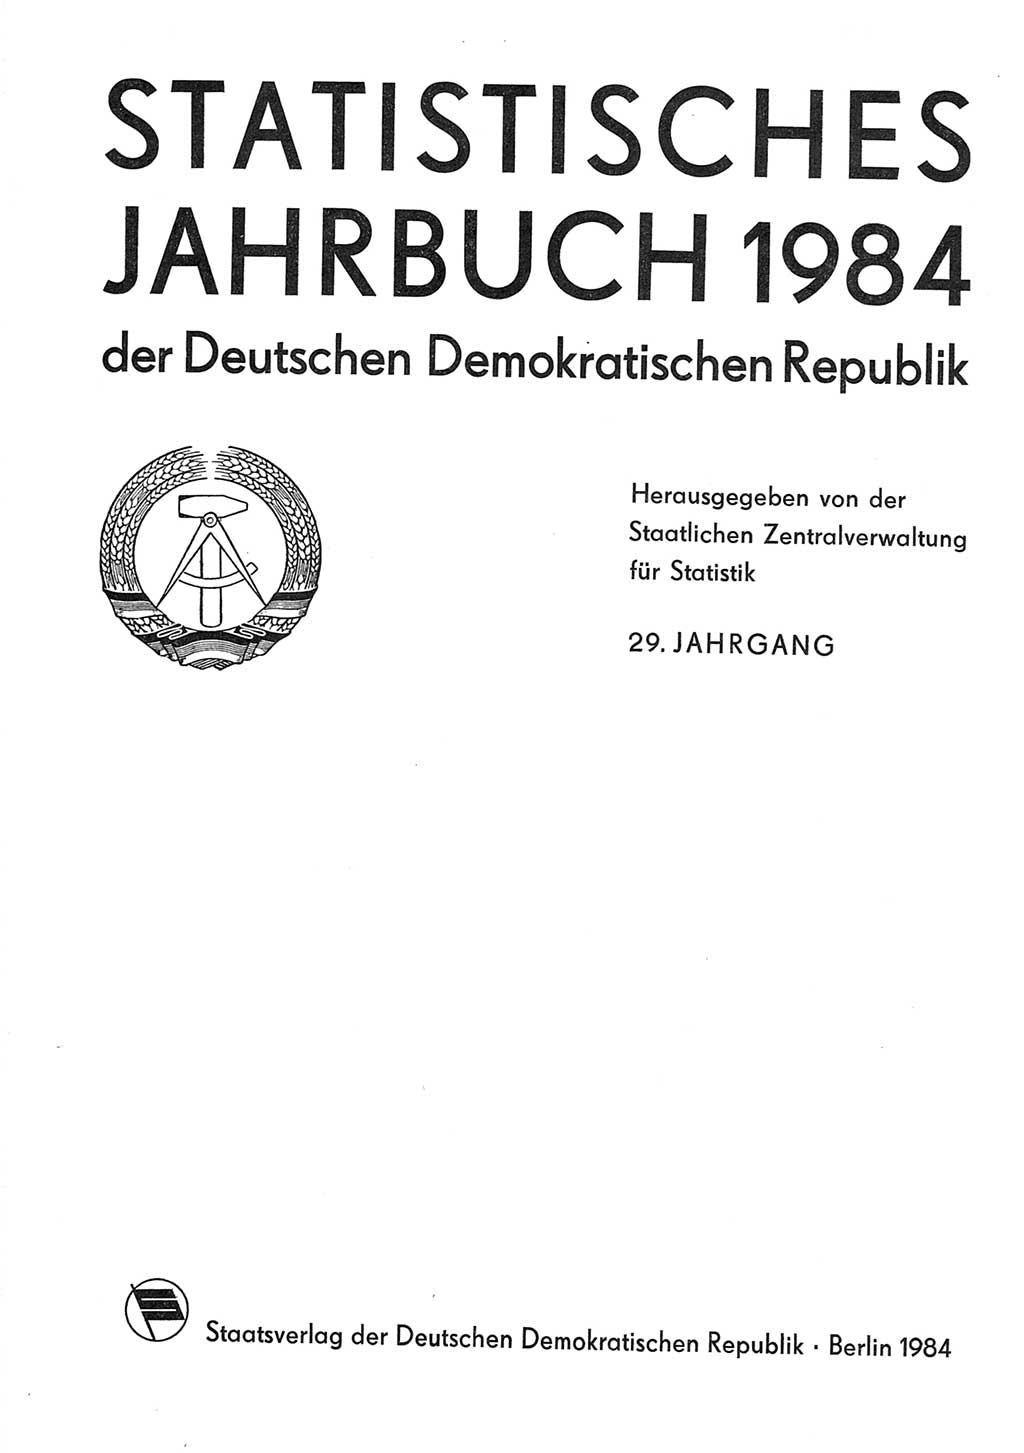 Statistisches Jahrbuch der Deutschen Demokratischen Republik (DDR) 1984, Seite 1 (Stat. Jb. DDR 1984, S. 1)